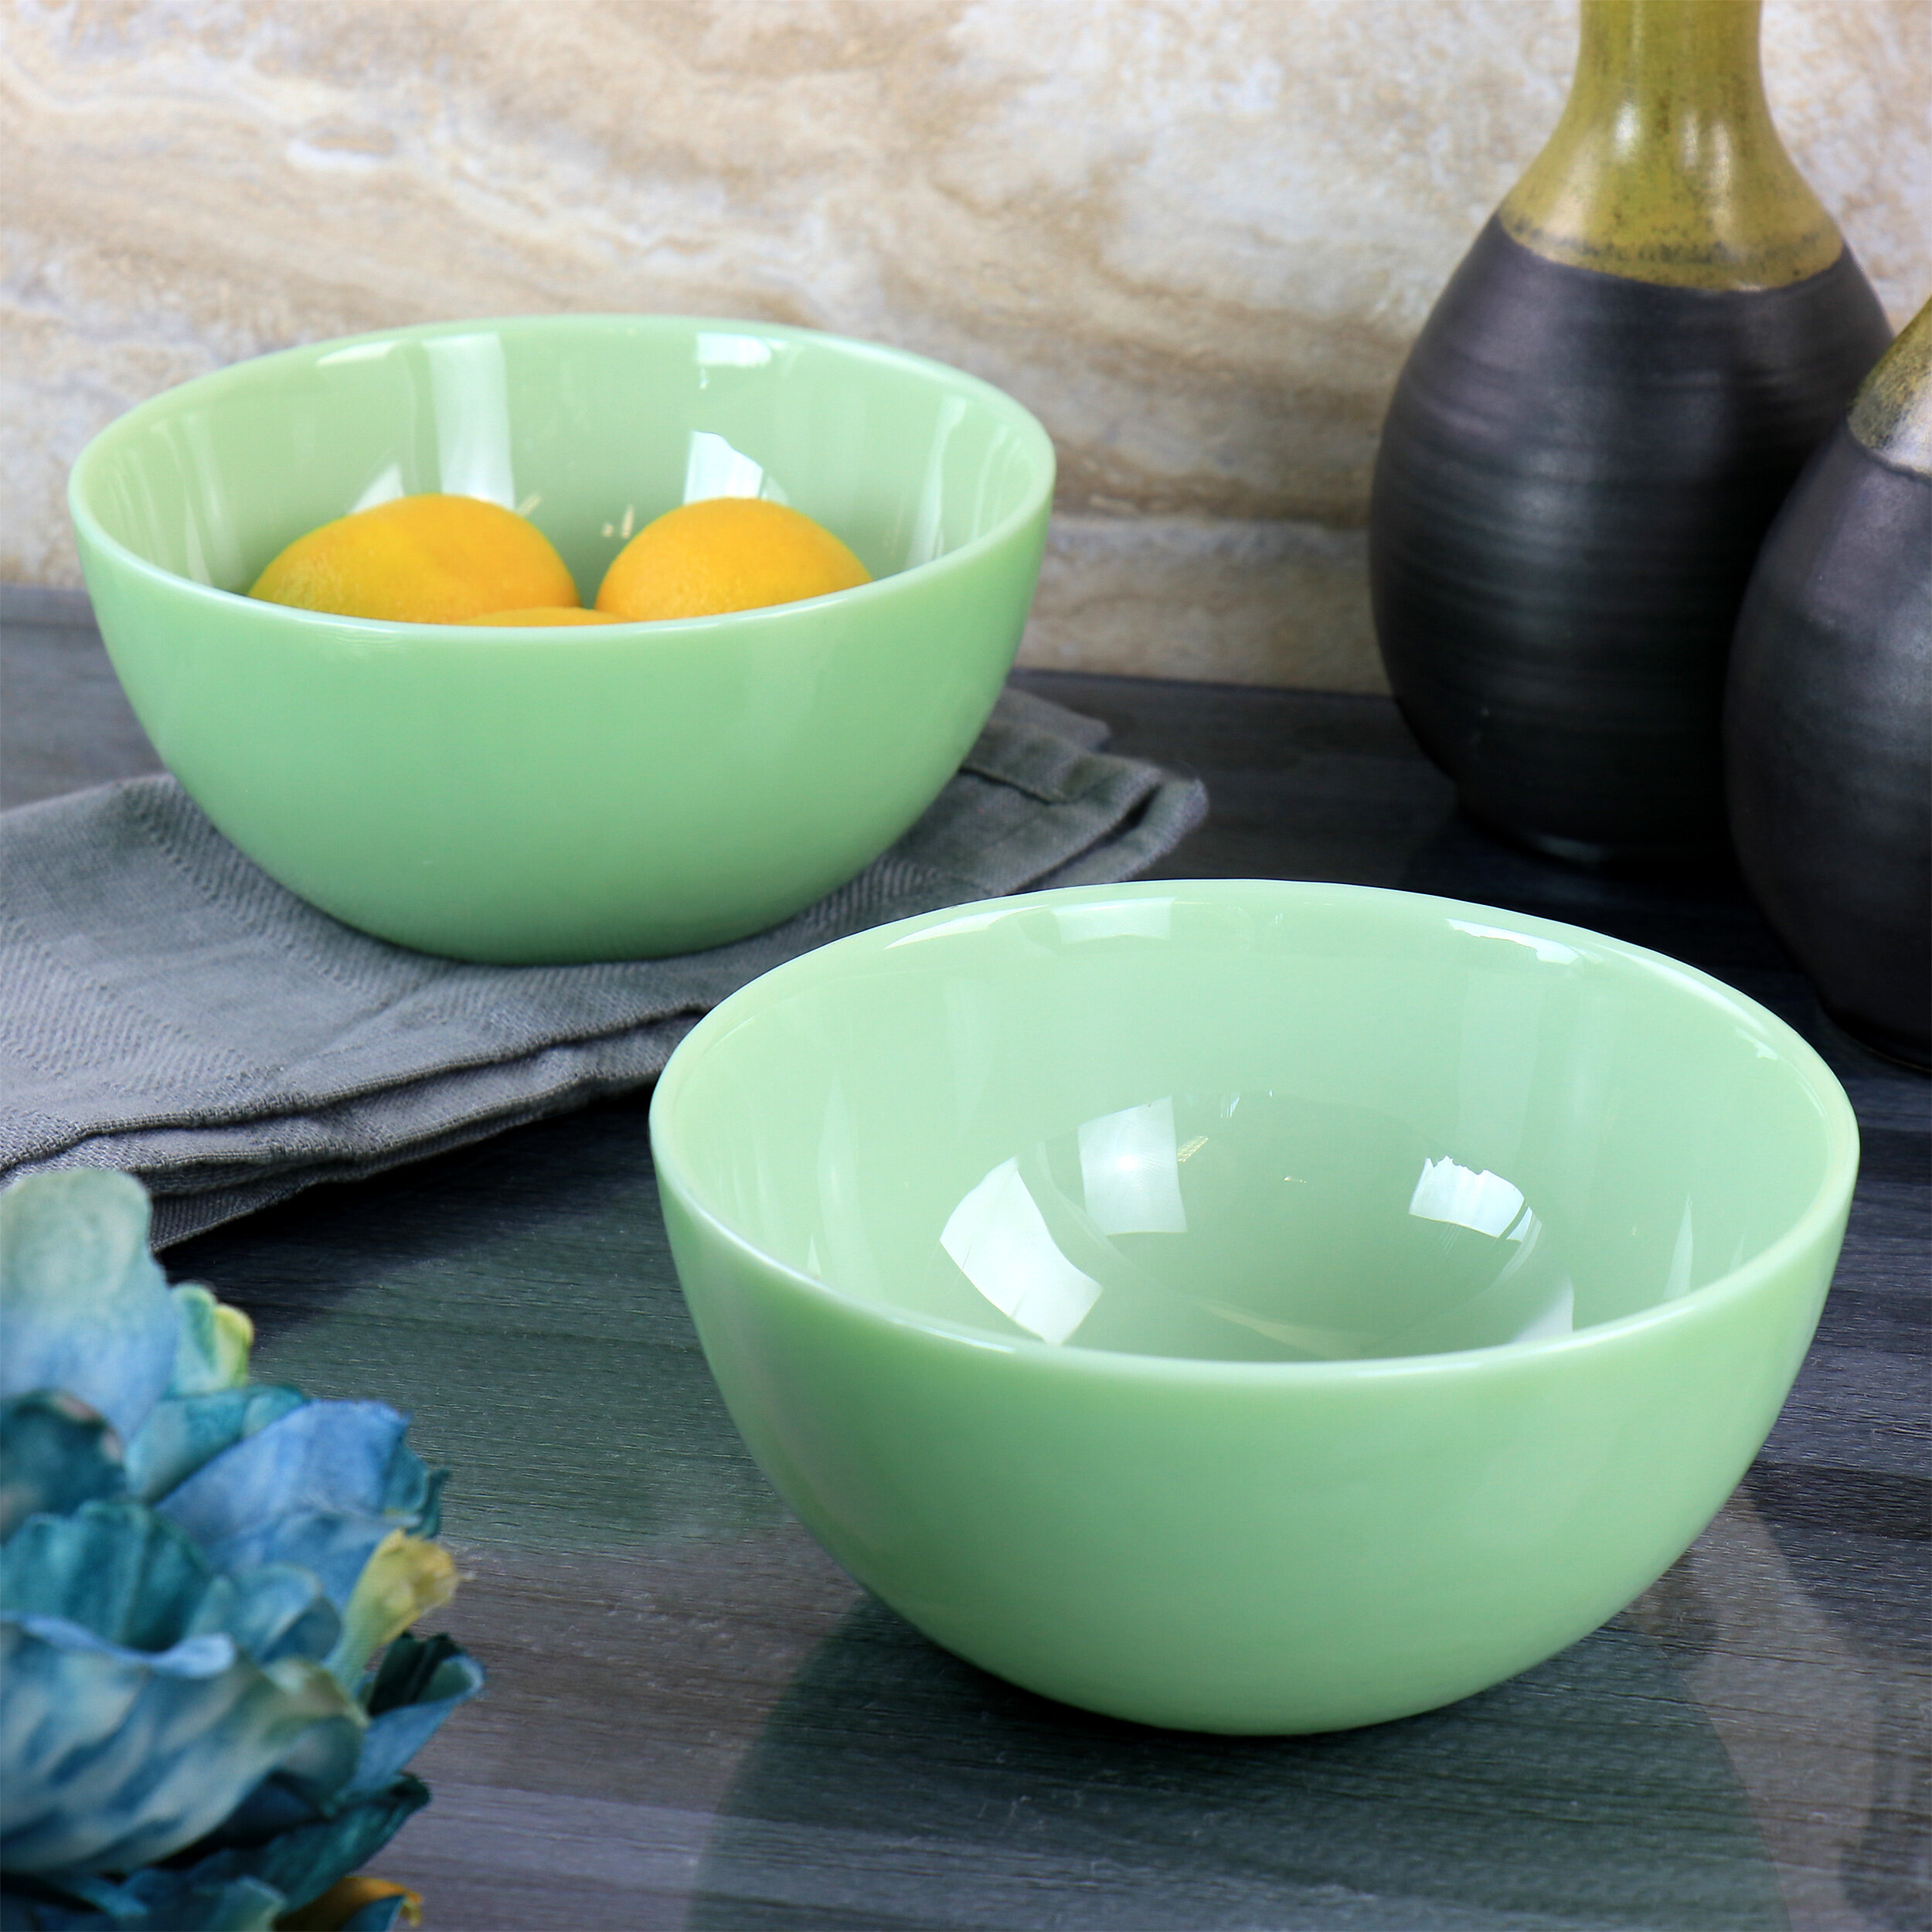 https://assets.wfcdn.com/im/05095420/compr-r85/1490/149057789/20-oz-jadeite-glass-cereal-bowl-set.jpg